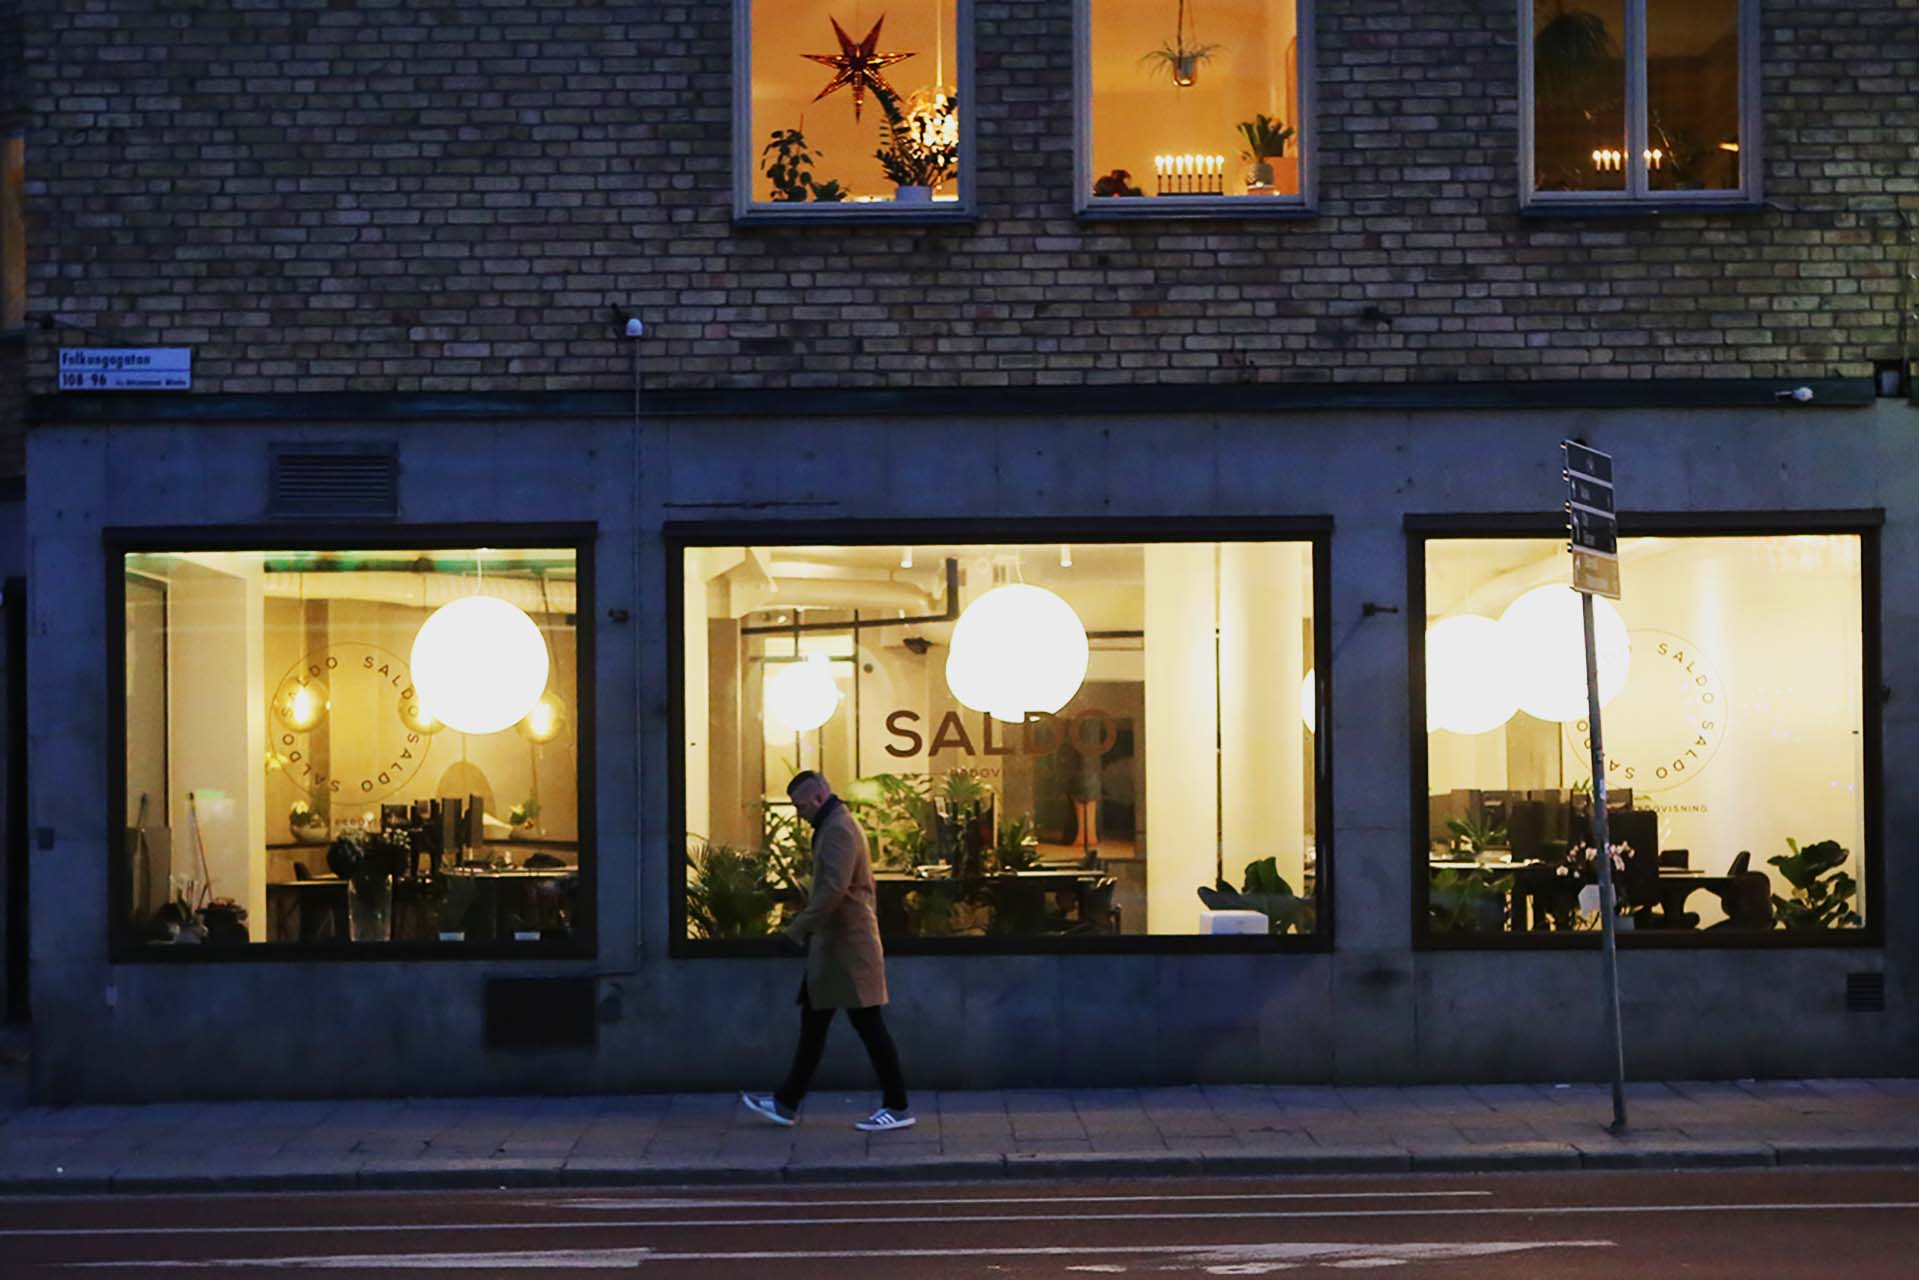 Kontor med industriell känsla i svart, vitt och betong av arkitekt Anders Frelin. Moon-lampor lyser i gatufönstren.